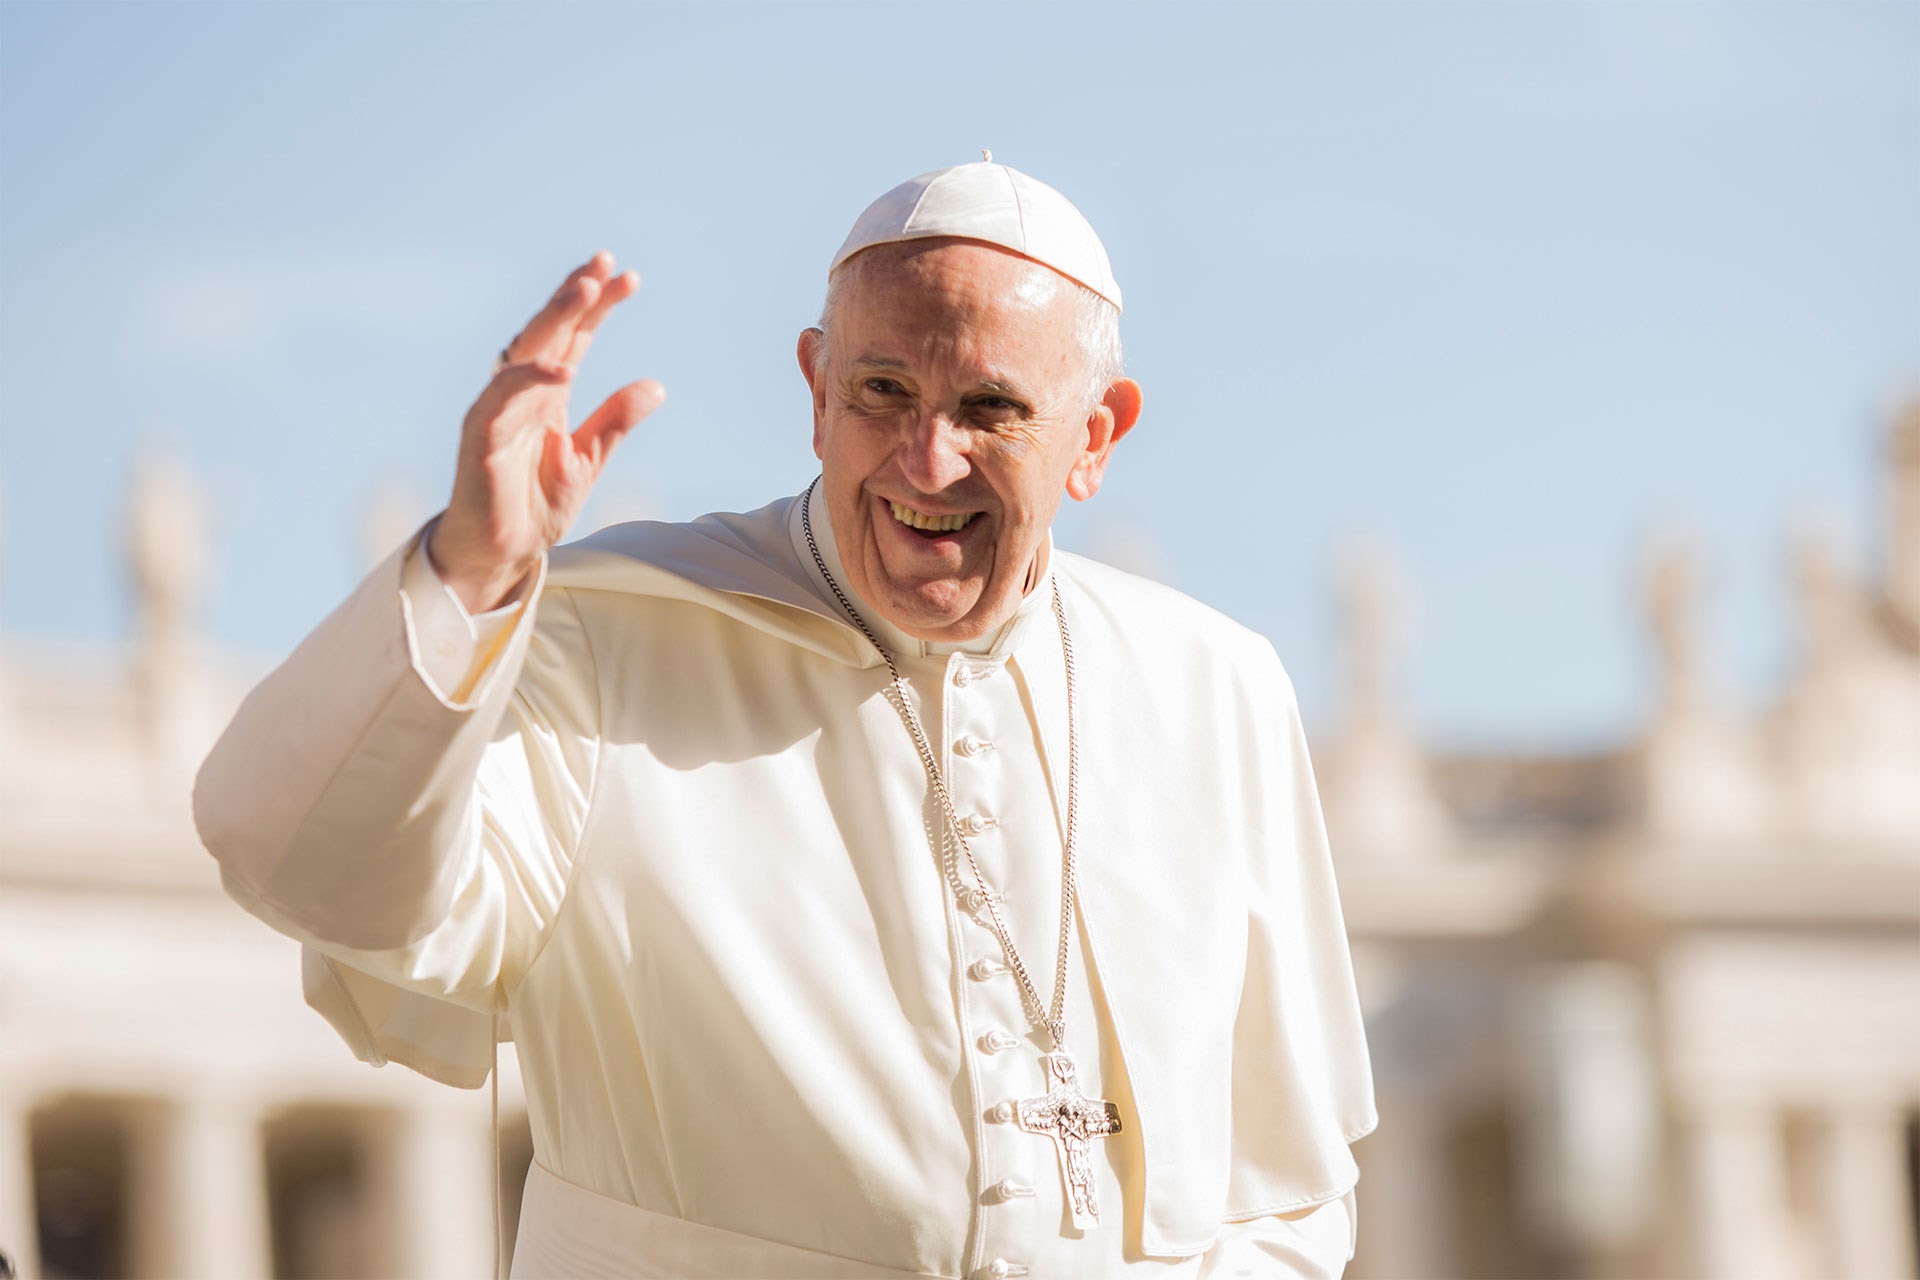 Spedisce 3 bossoli a papa Francesco ma sbaglia il cap: la lettera intercettata a Genova